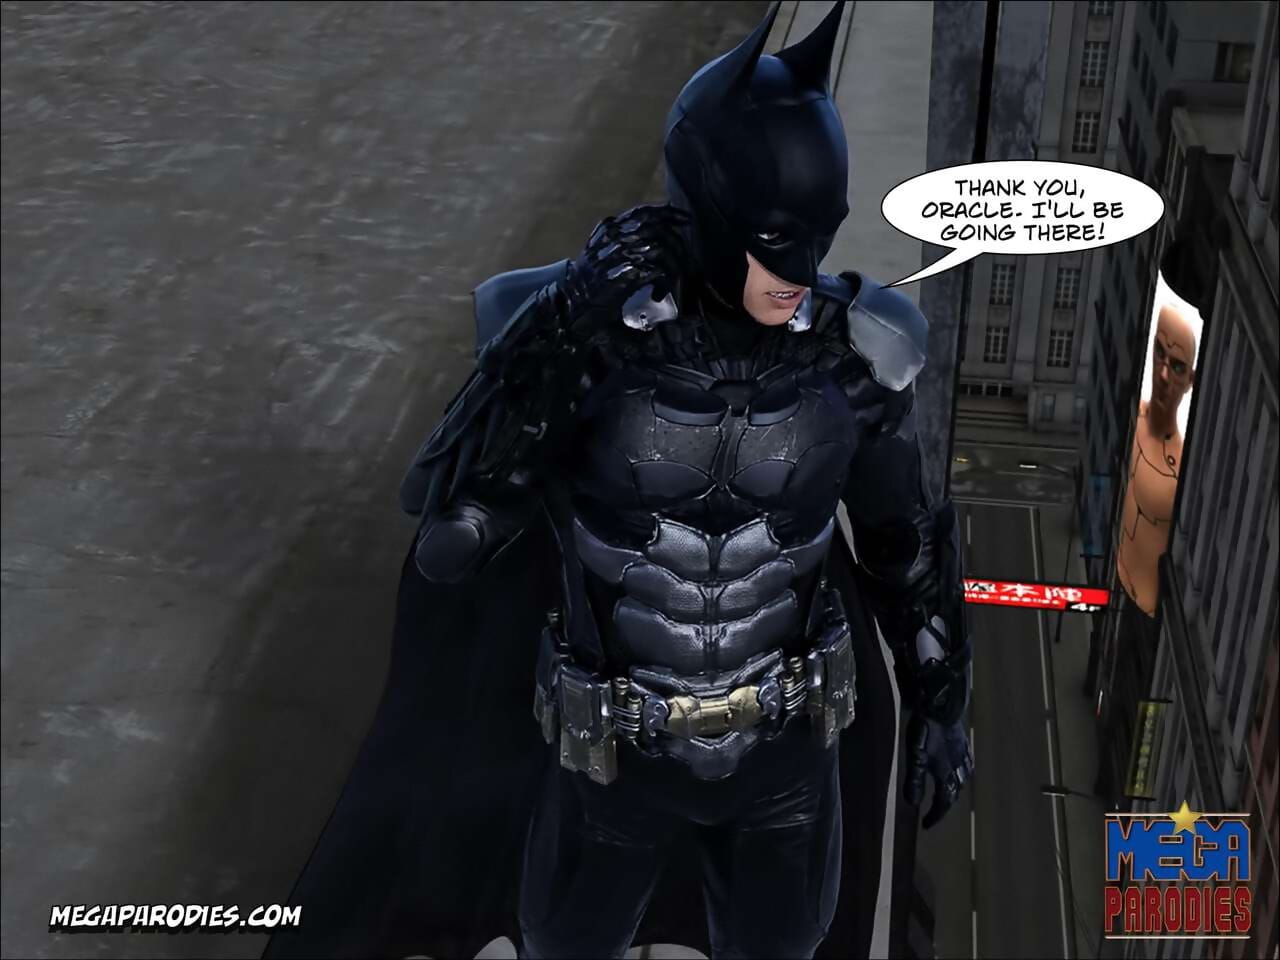 Мега пародии комиксы коллекция Бэтмен page 1